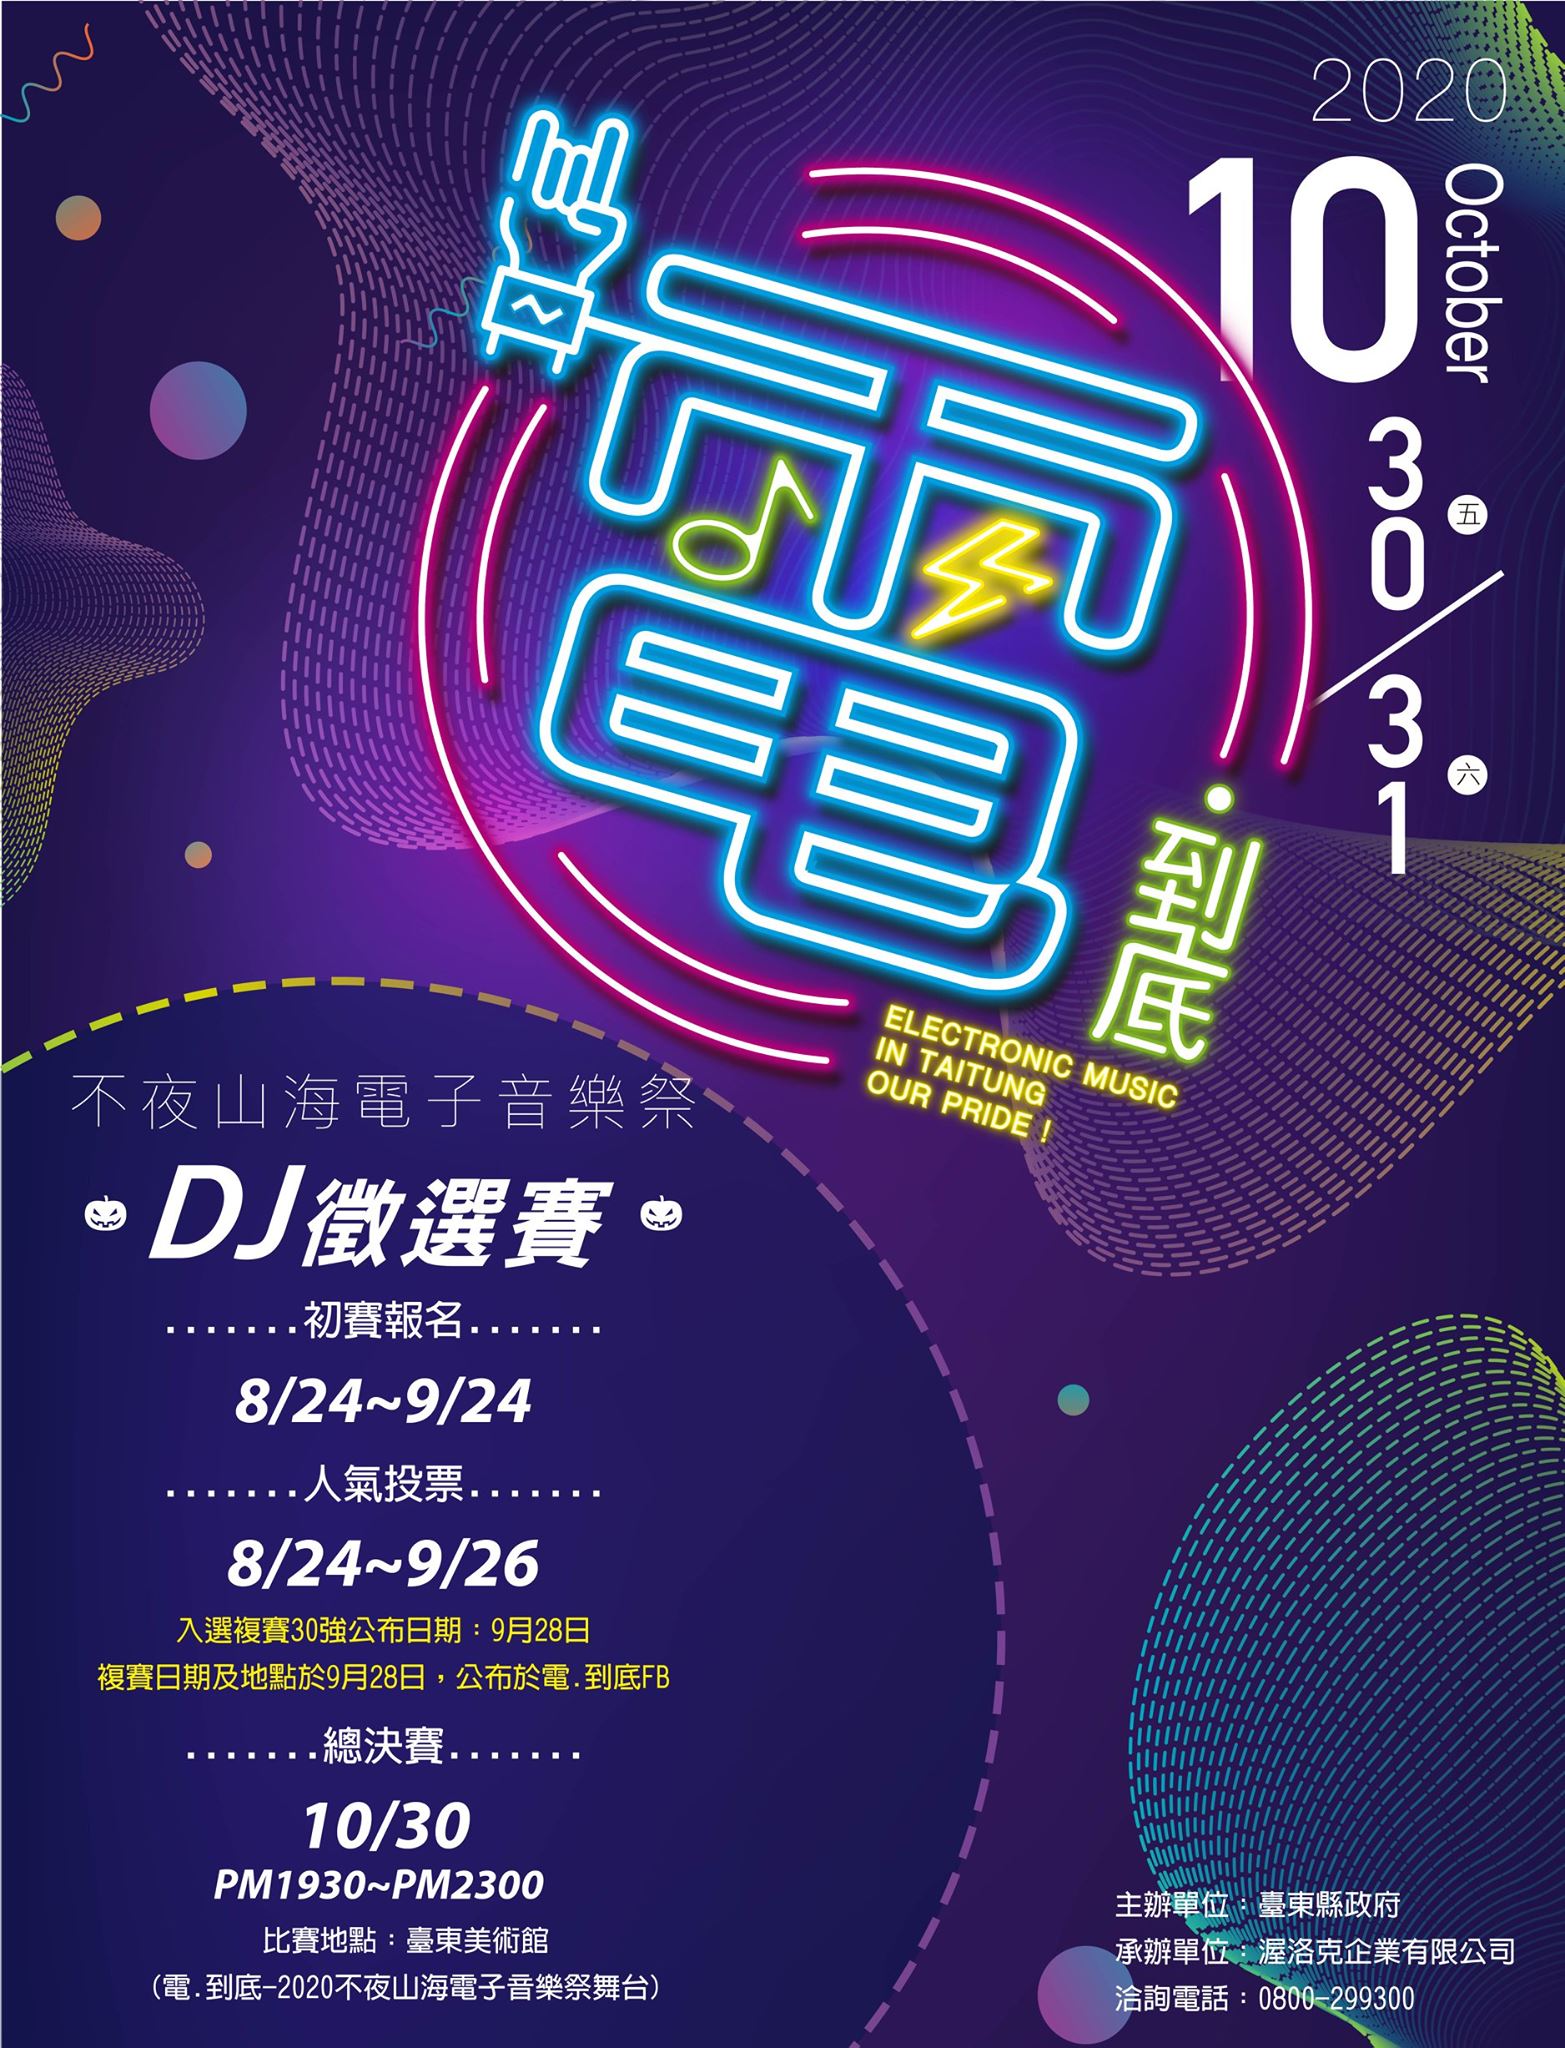 【徵選】電.到底-2020不夜山海電子音樂祭-DJ徵選賽